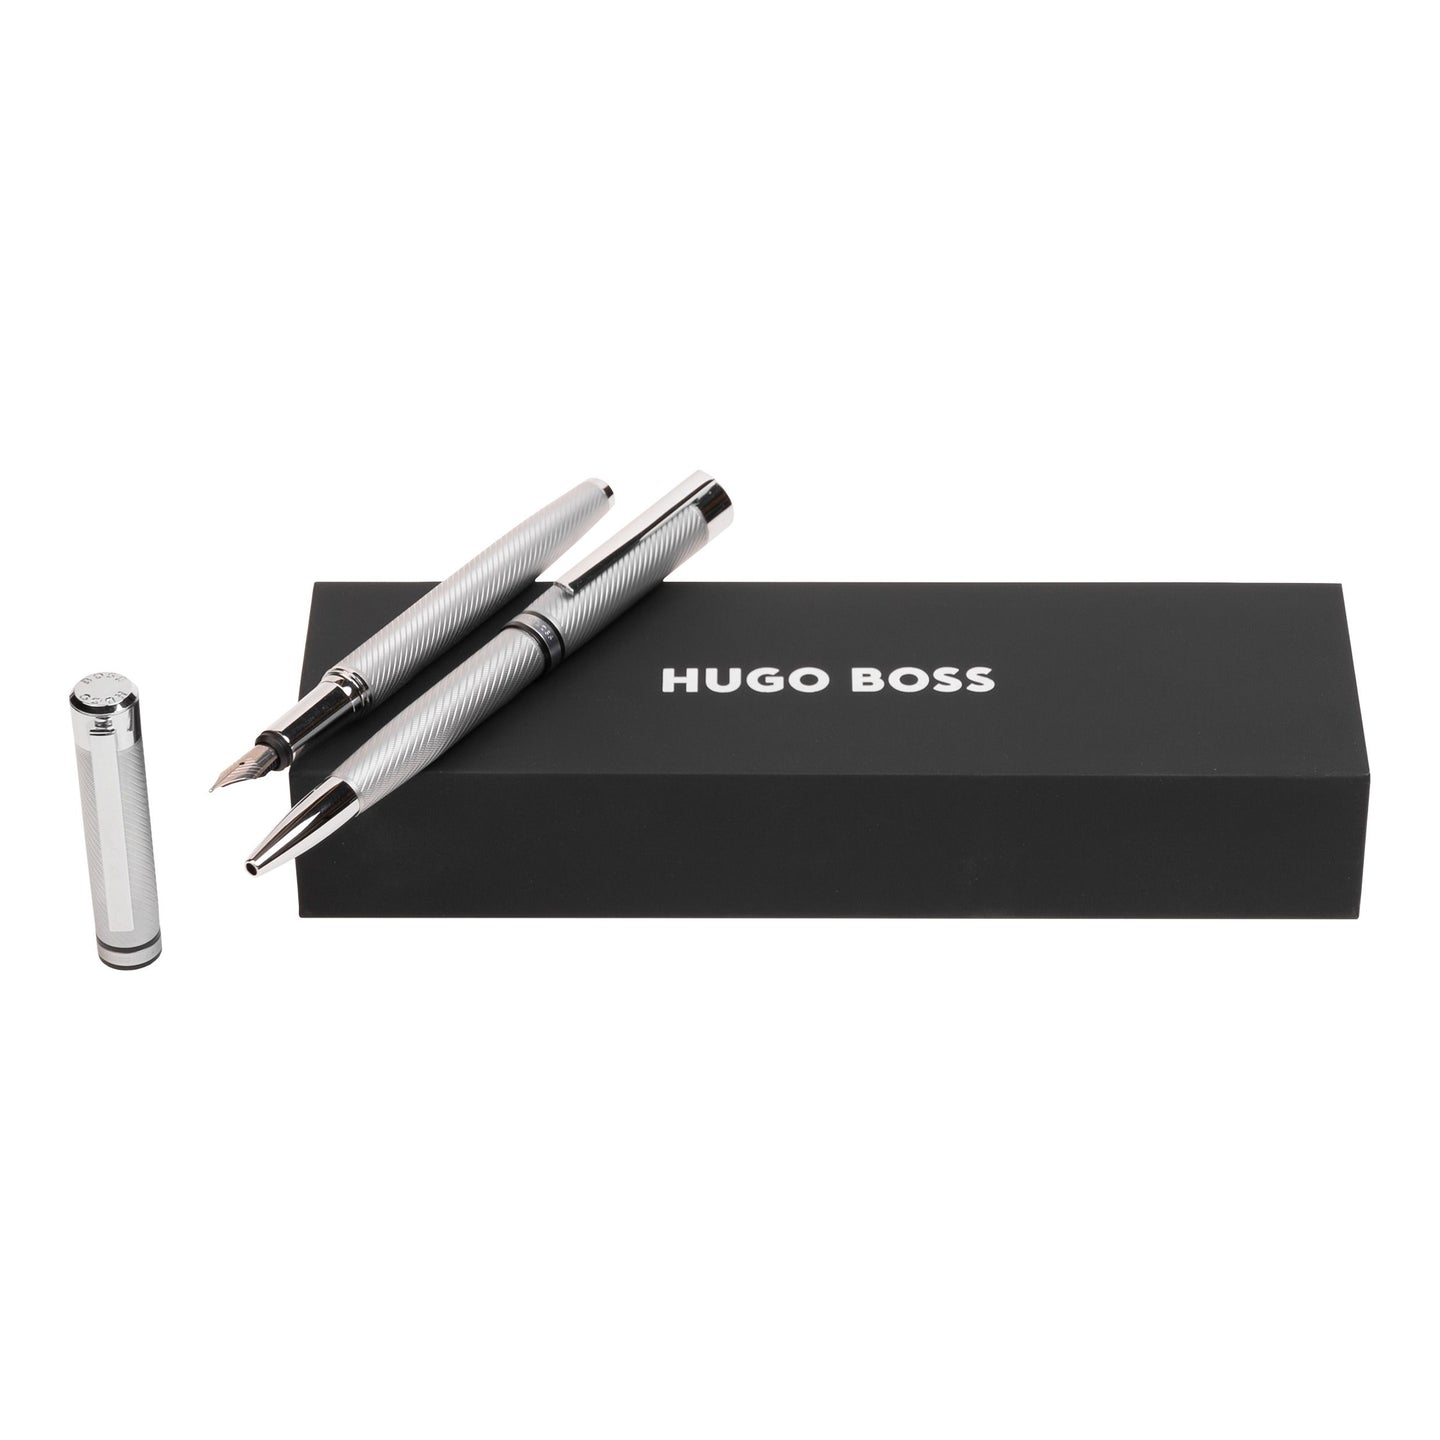 Hugo Boss Stifteset FILAMENT Chrome | Kugelschreiber und Füllfederhalter